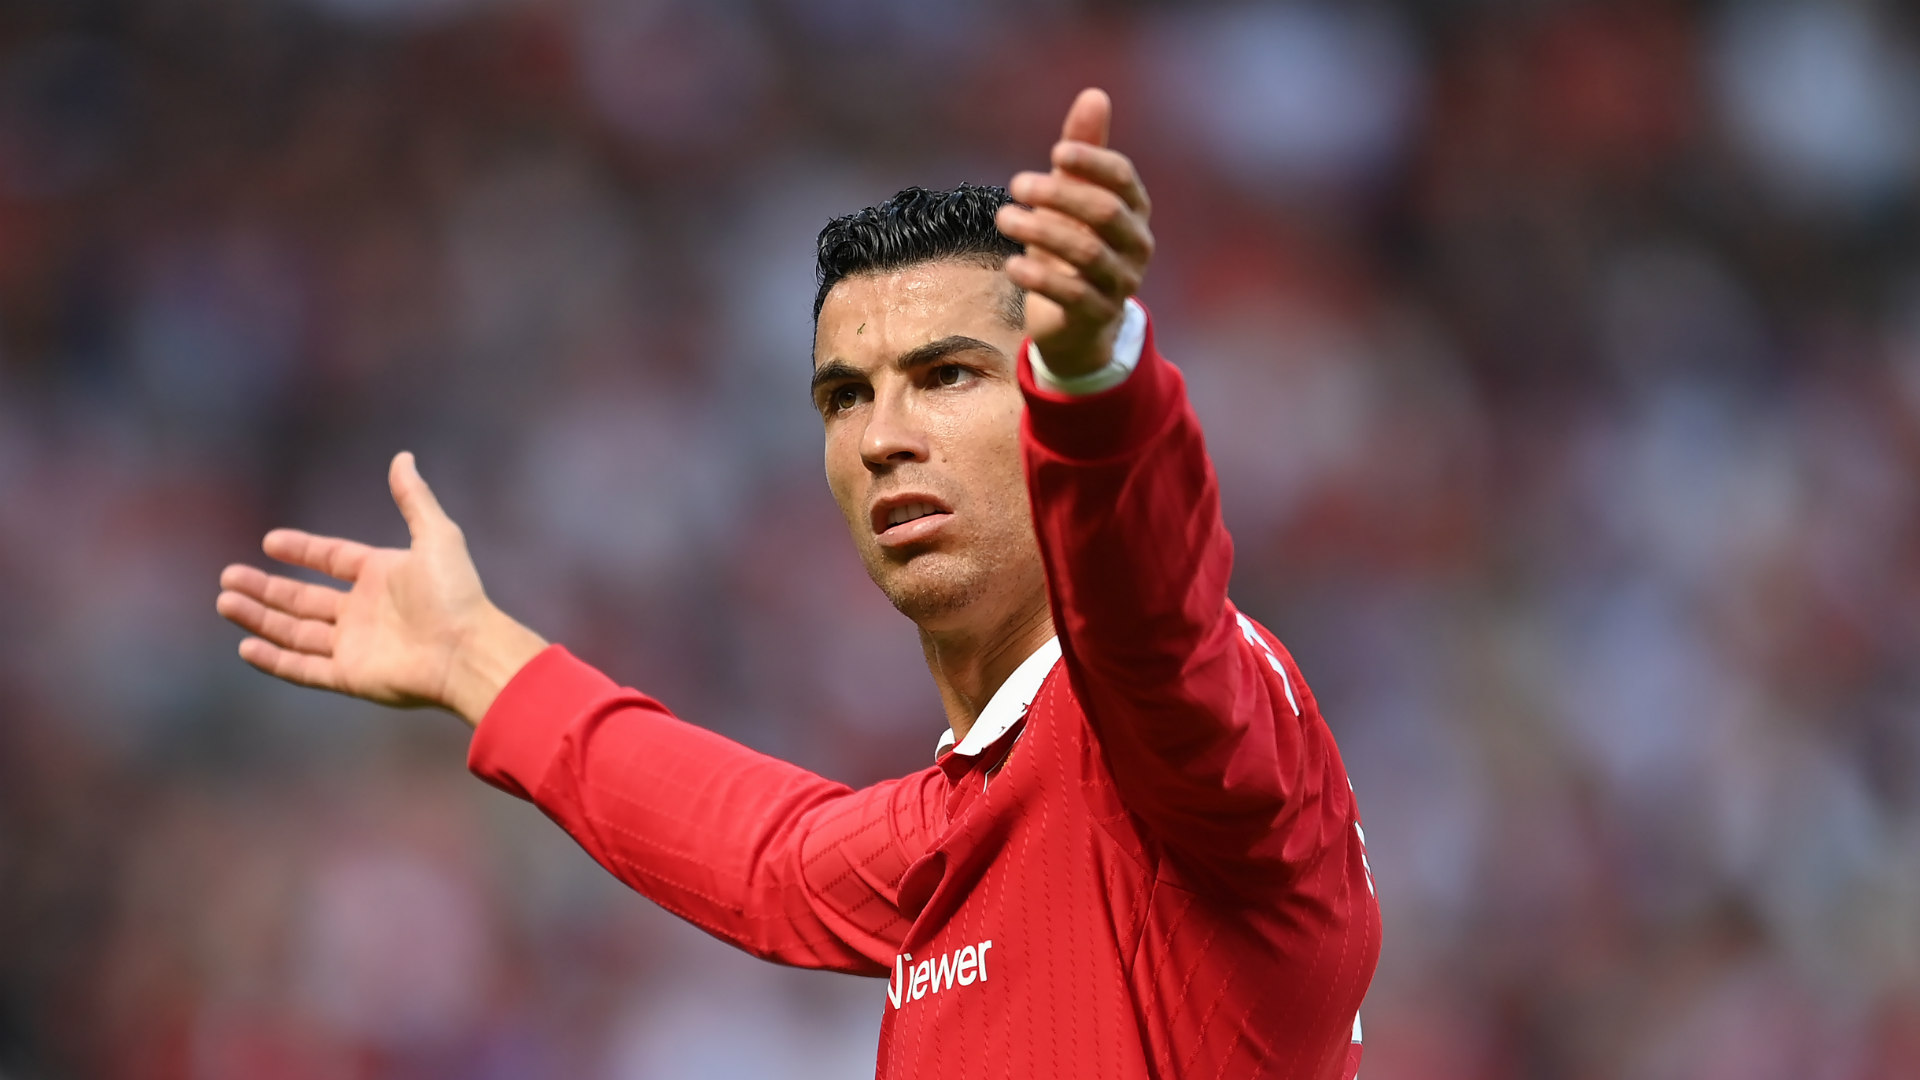 Intervista Cristiano Ronaldo, lo United annuncia provvedimenti seri